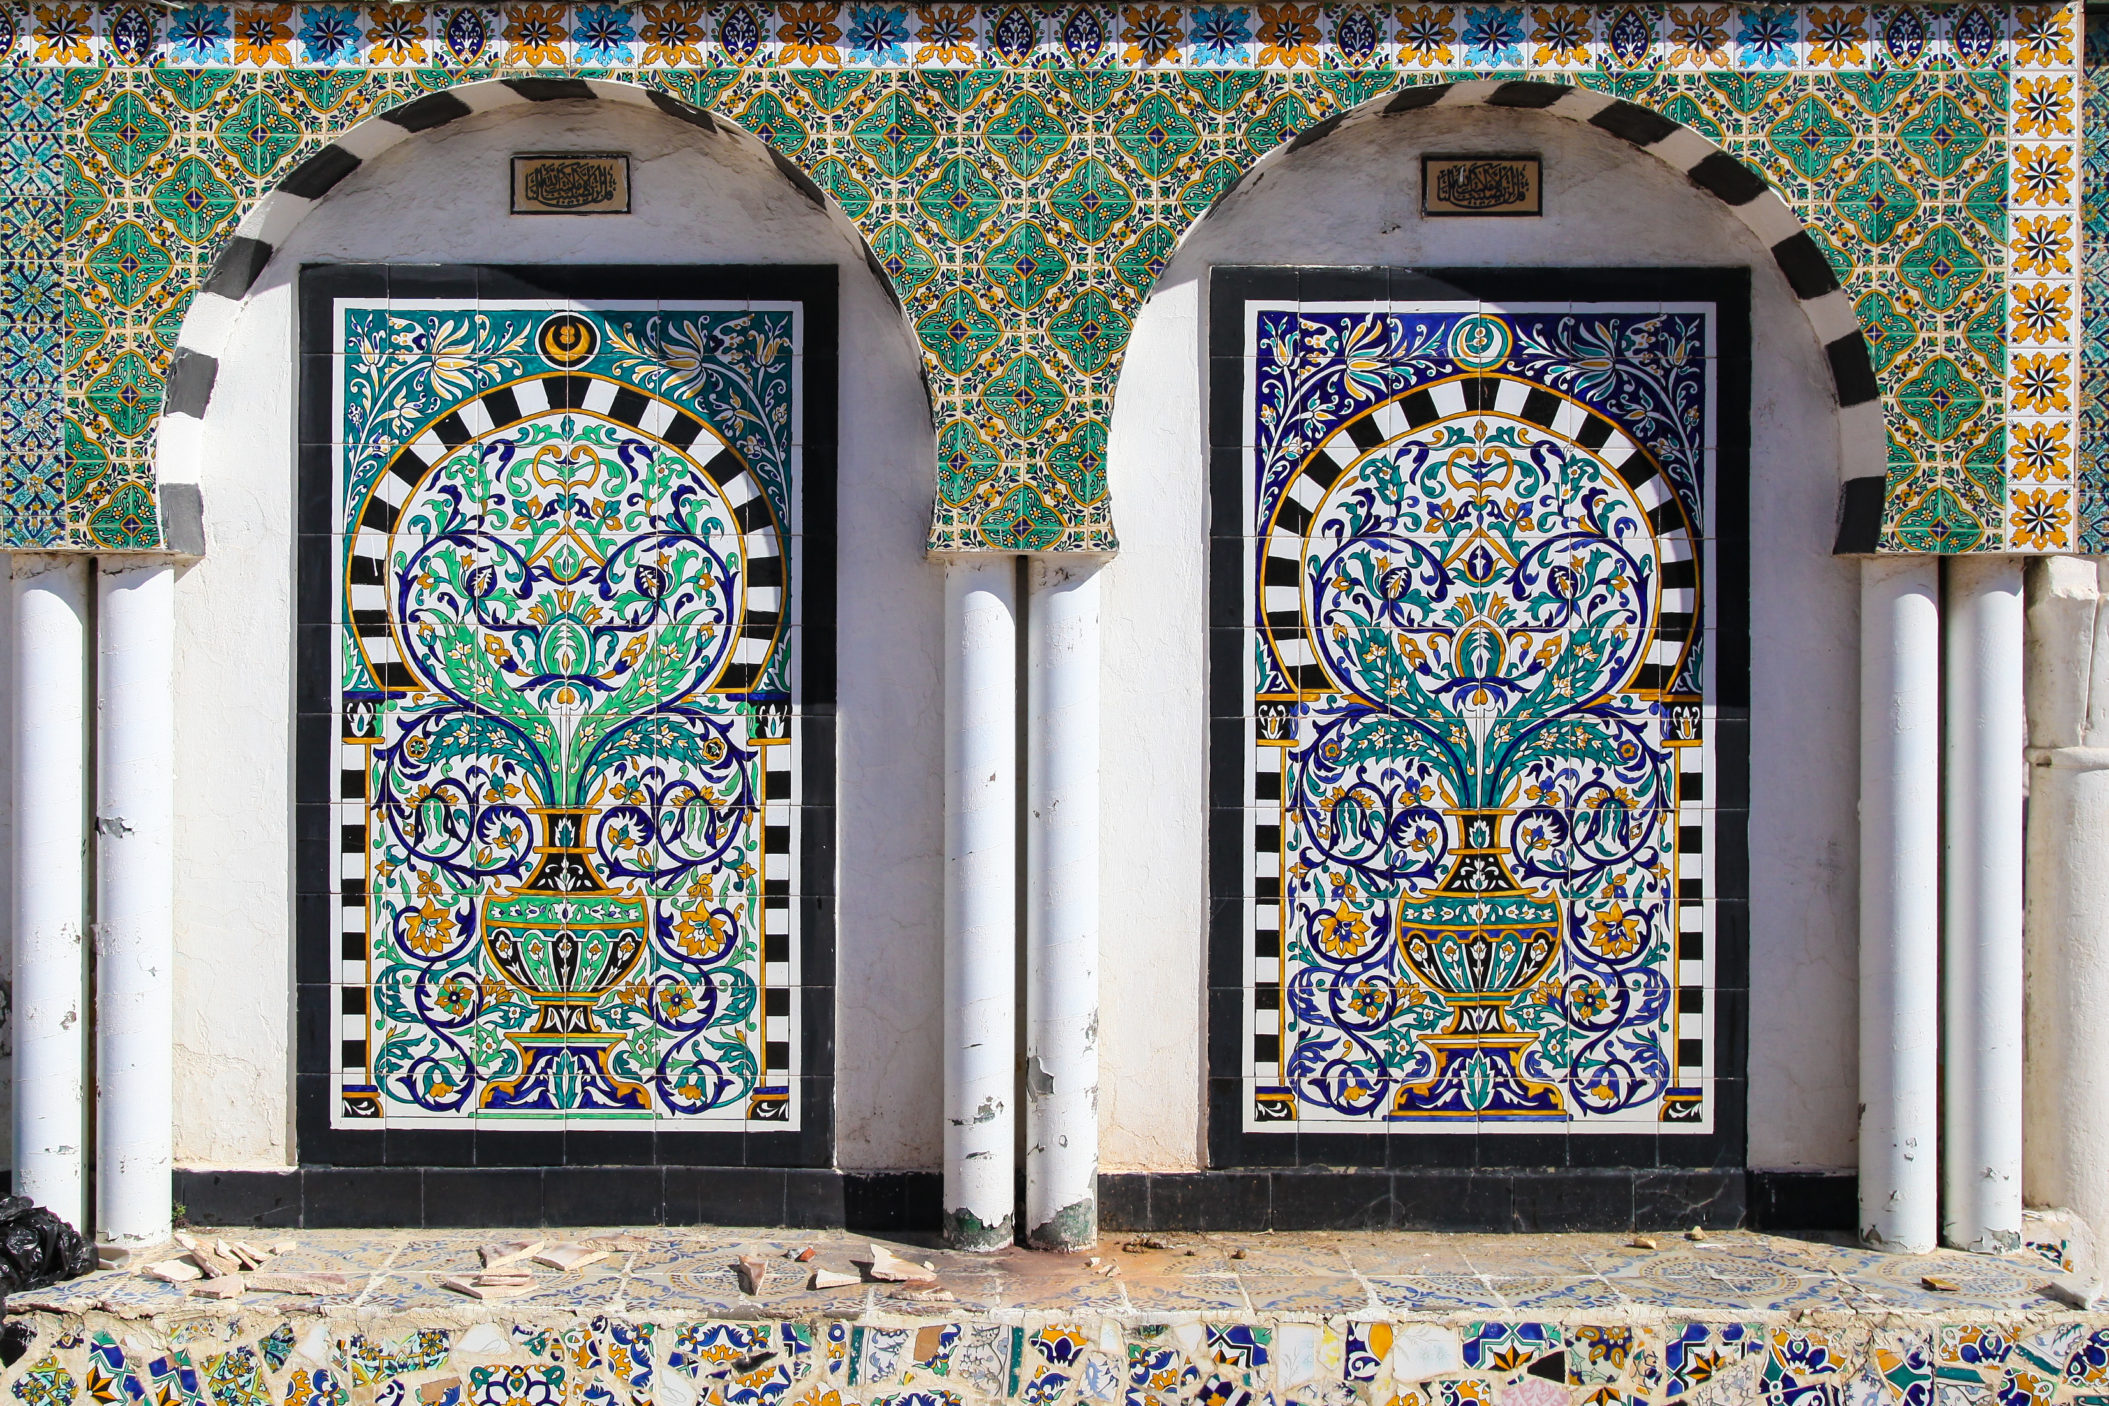 Tunisia [Shutterstock]